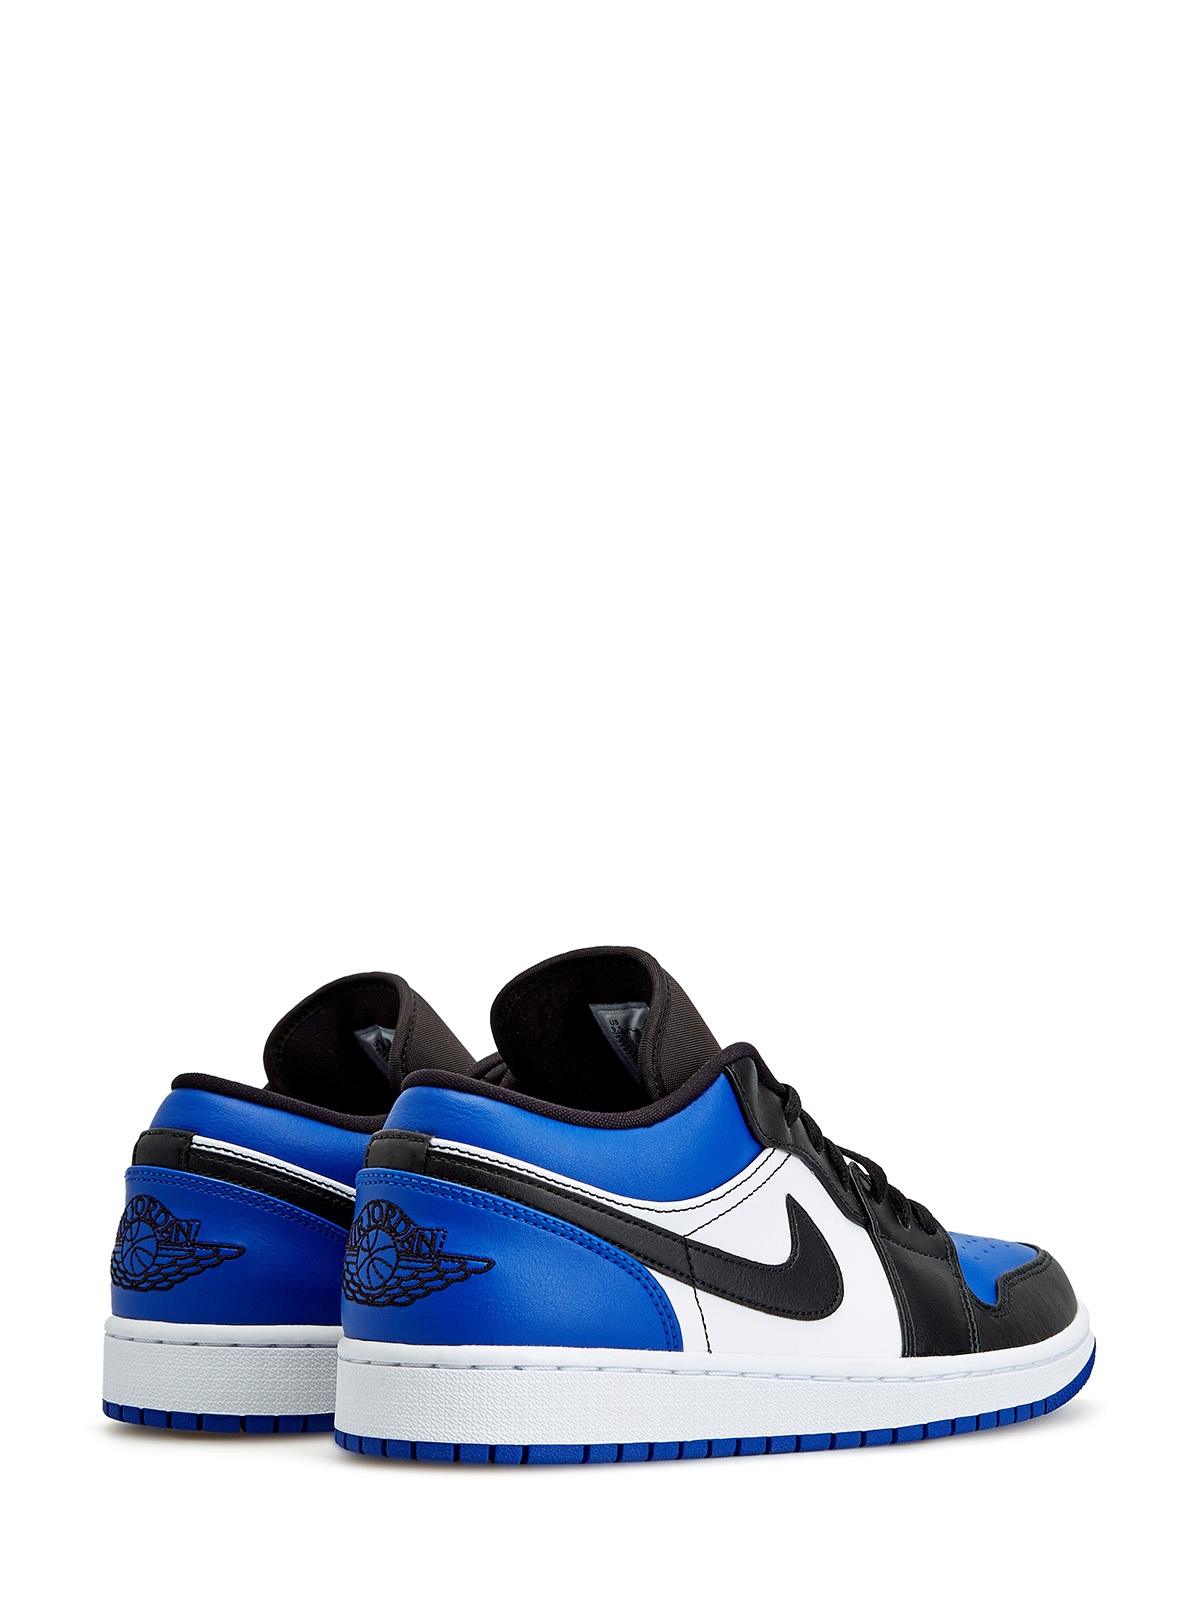 Кроссовки Jordan 1 Low 'Royal Toe' Jordan, цвет синий, размер 43 - фото 3